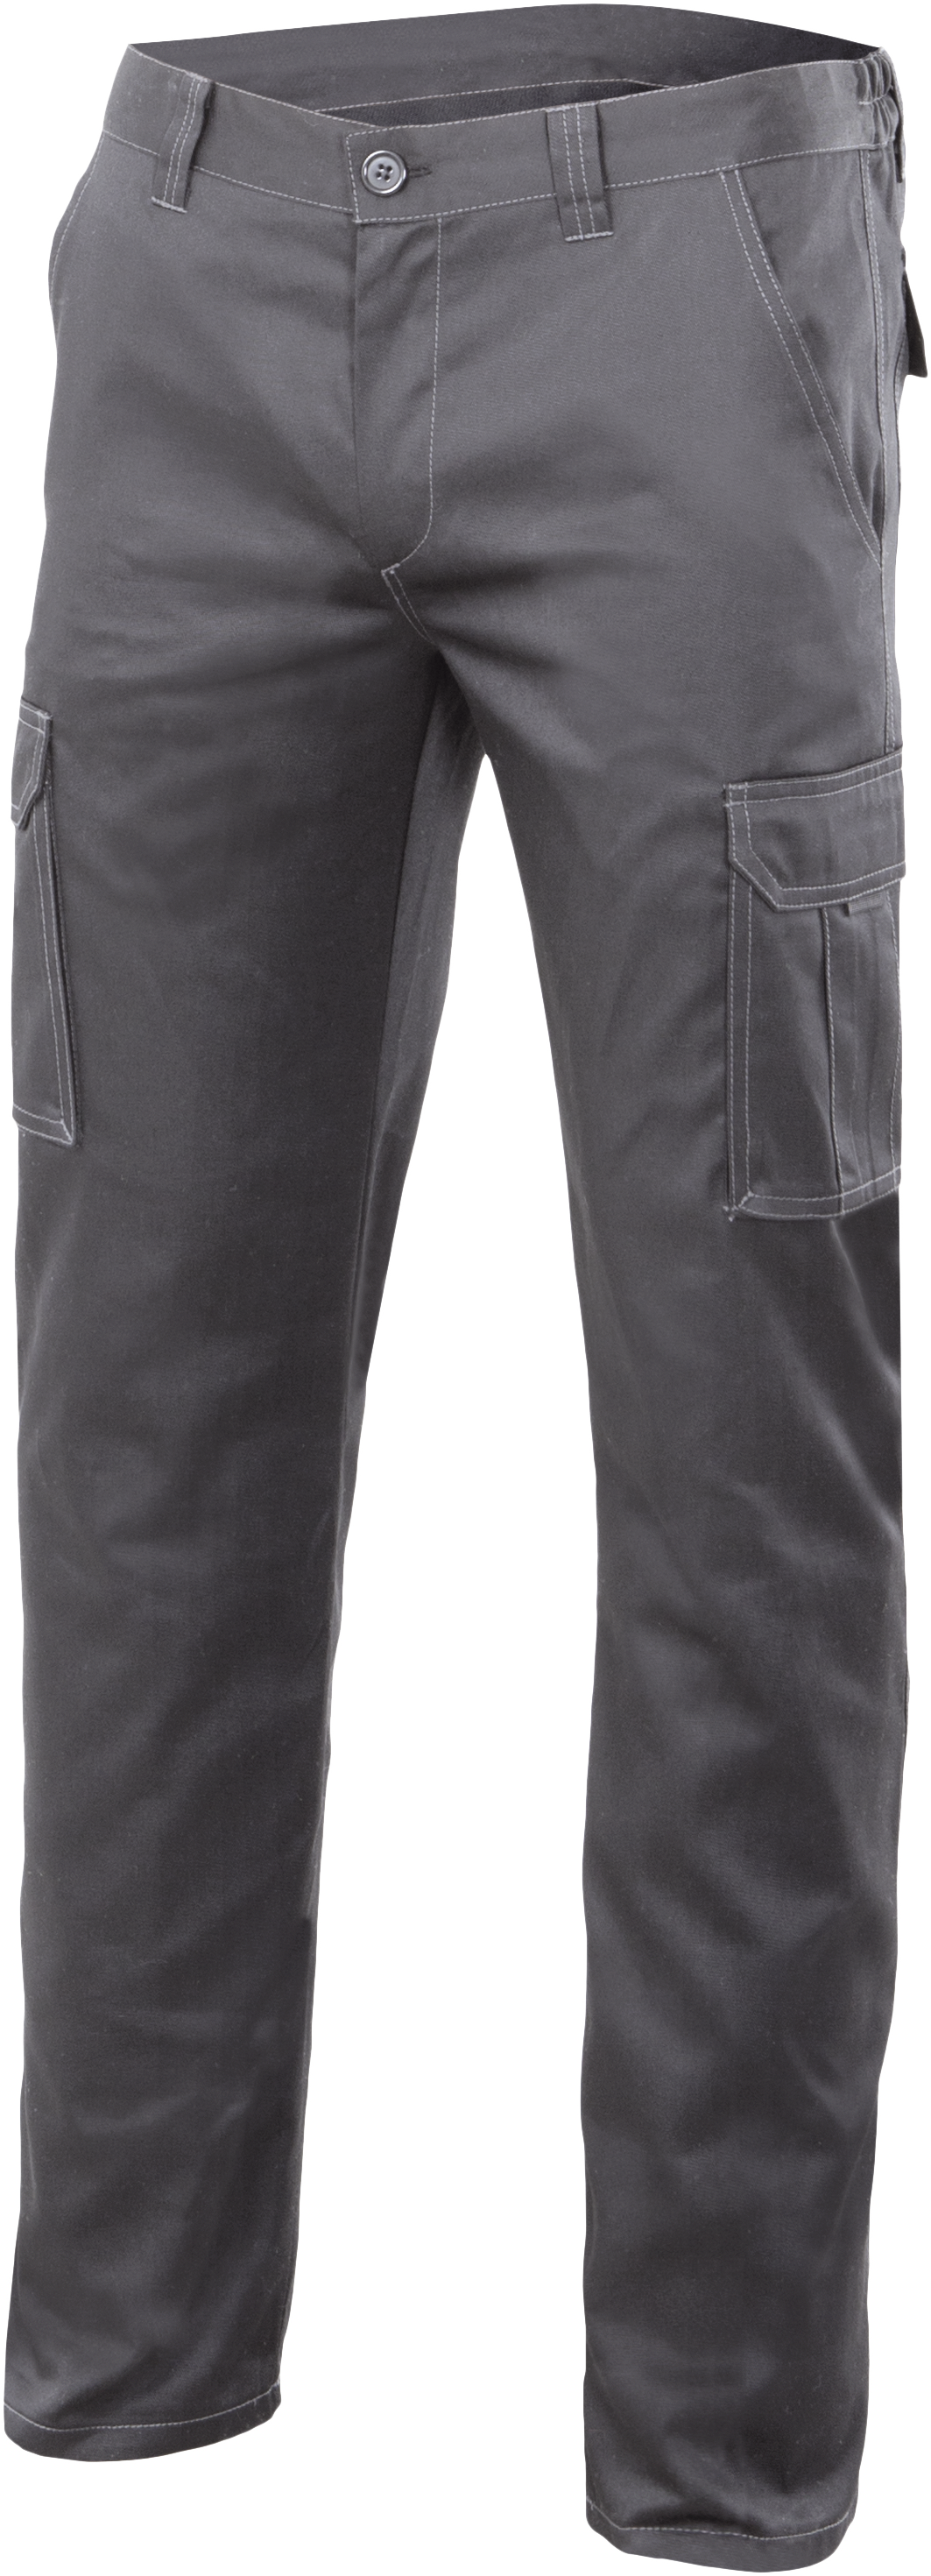 Pantalon gris 103002s txs/s